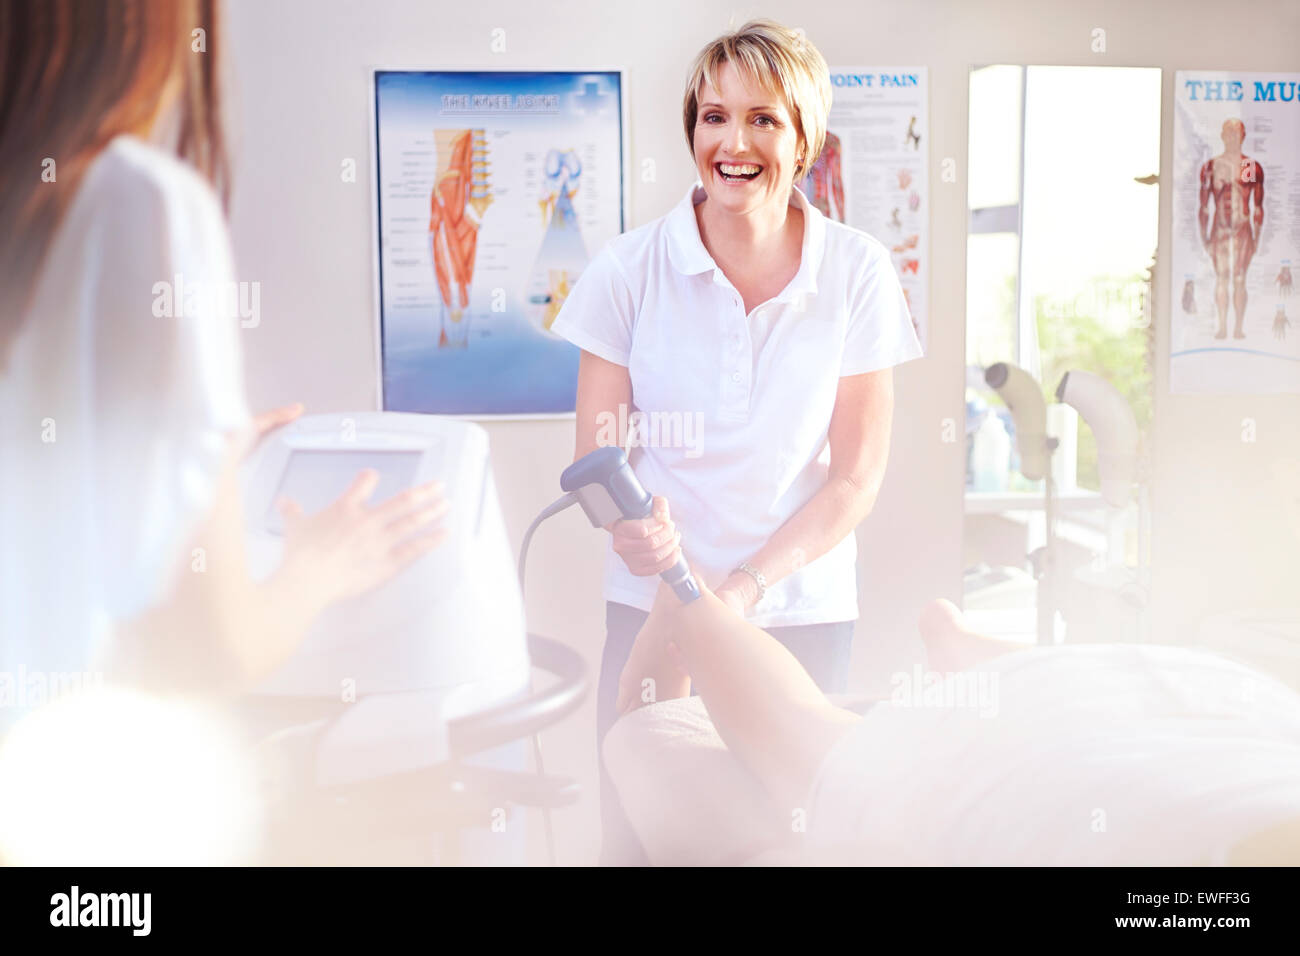 Lächelnd Physiotherapeut mit Ultraschallsonde am Bein des Patienten Stockfoto